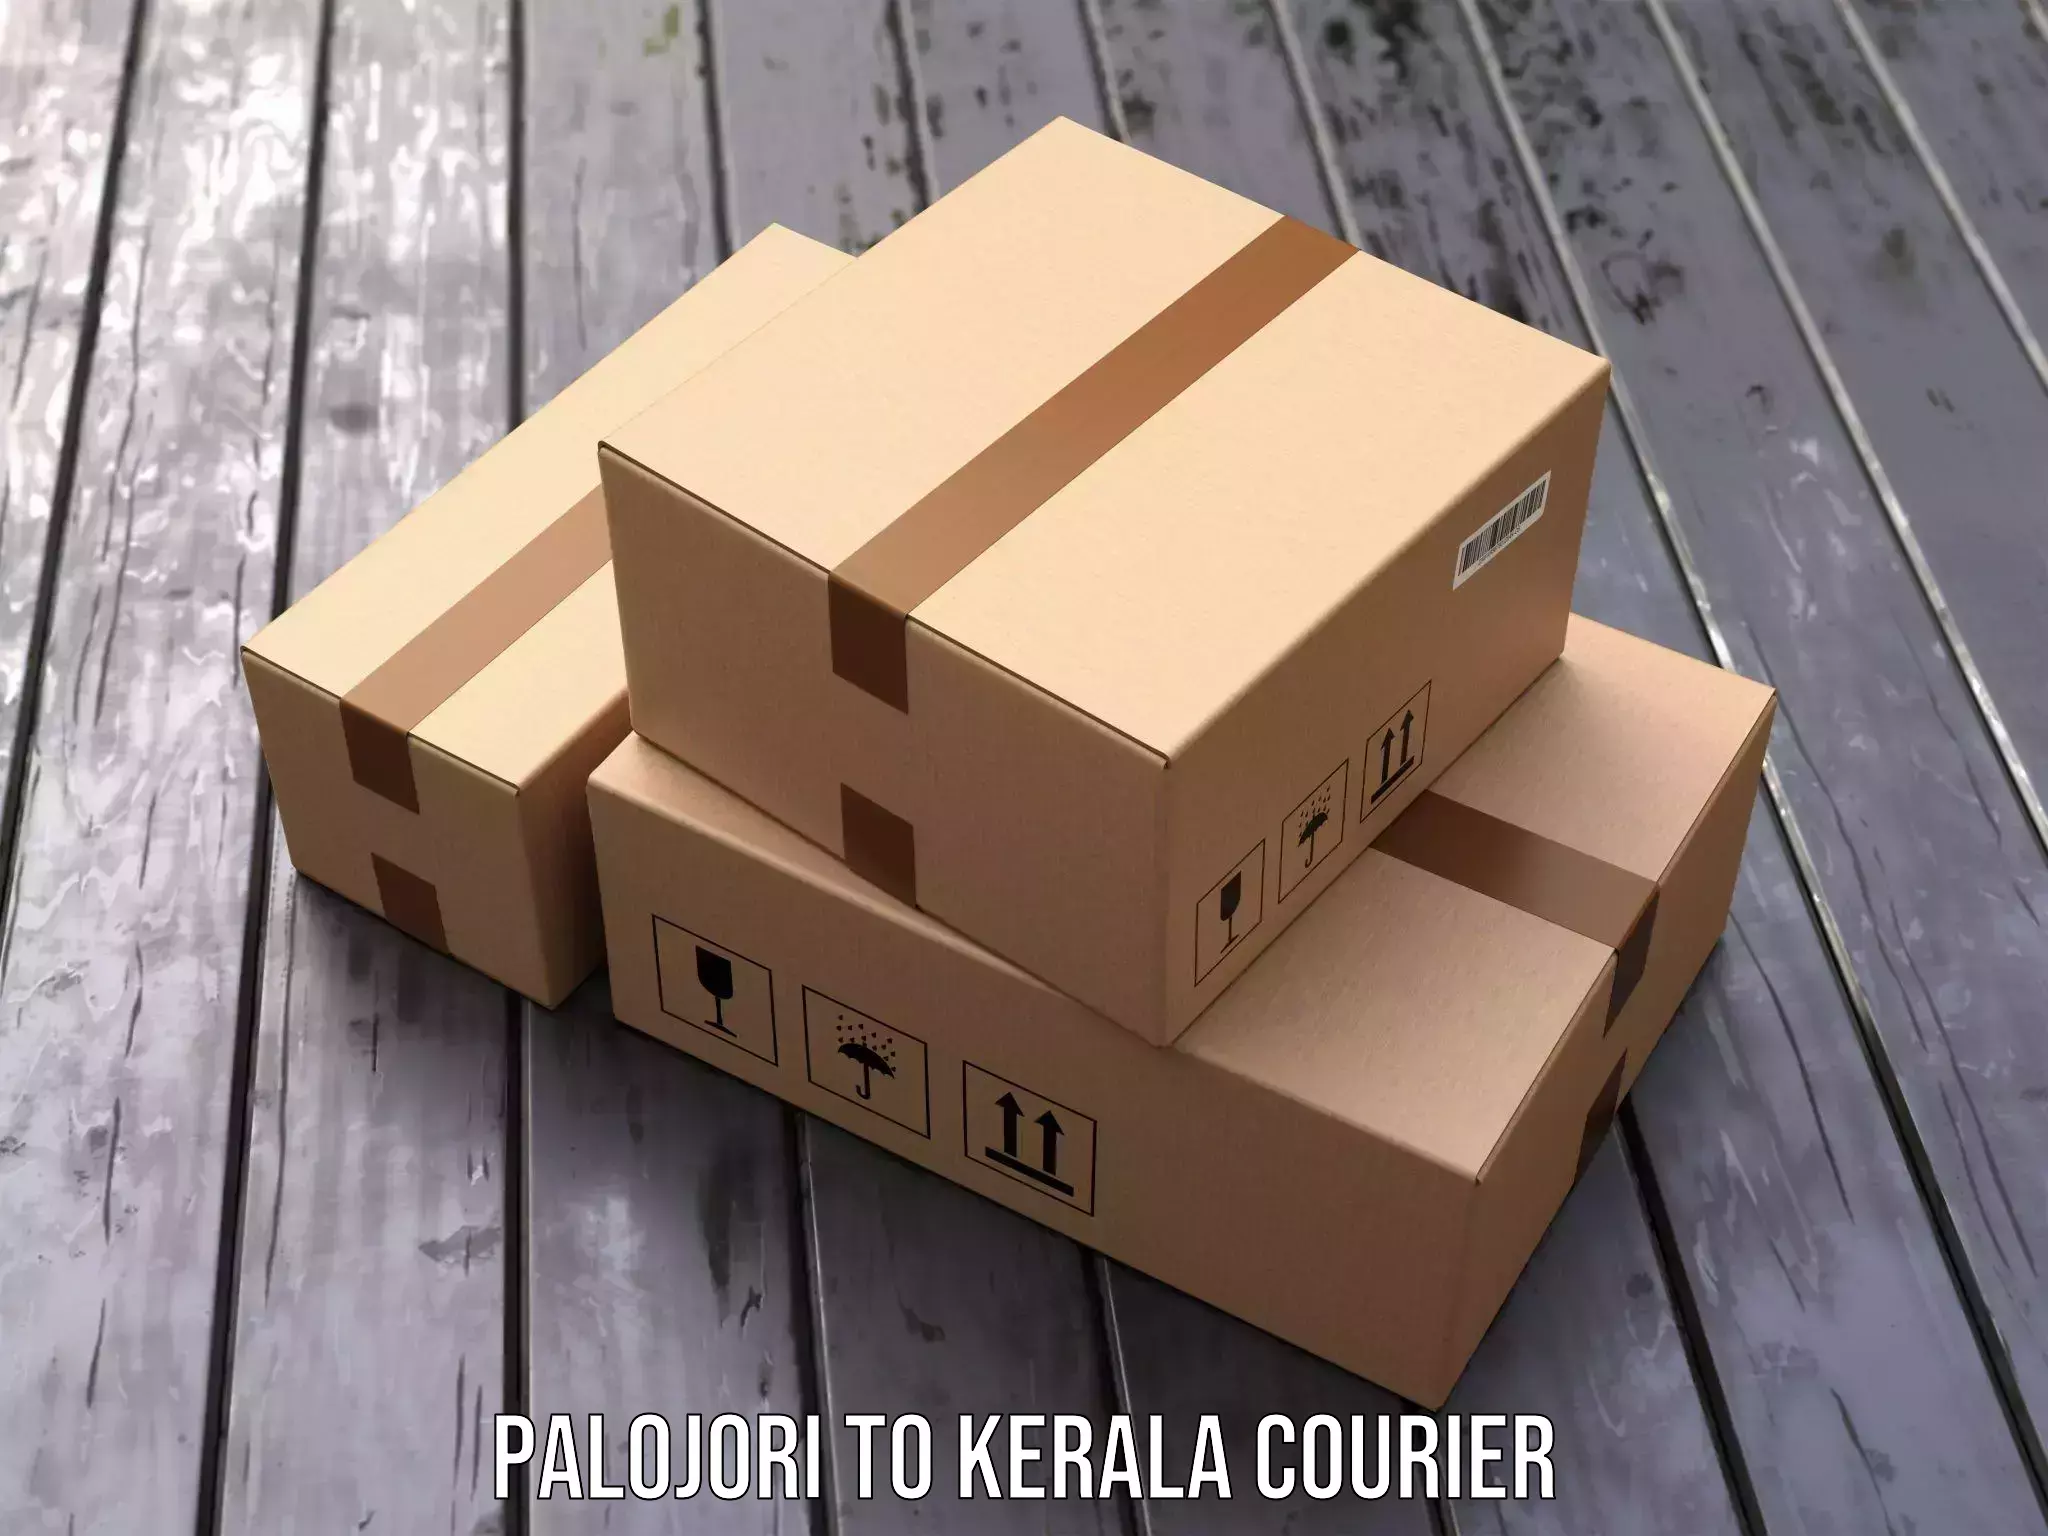 Enhanced tracking features Palojori to Kerala